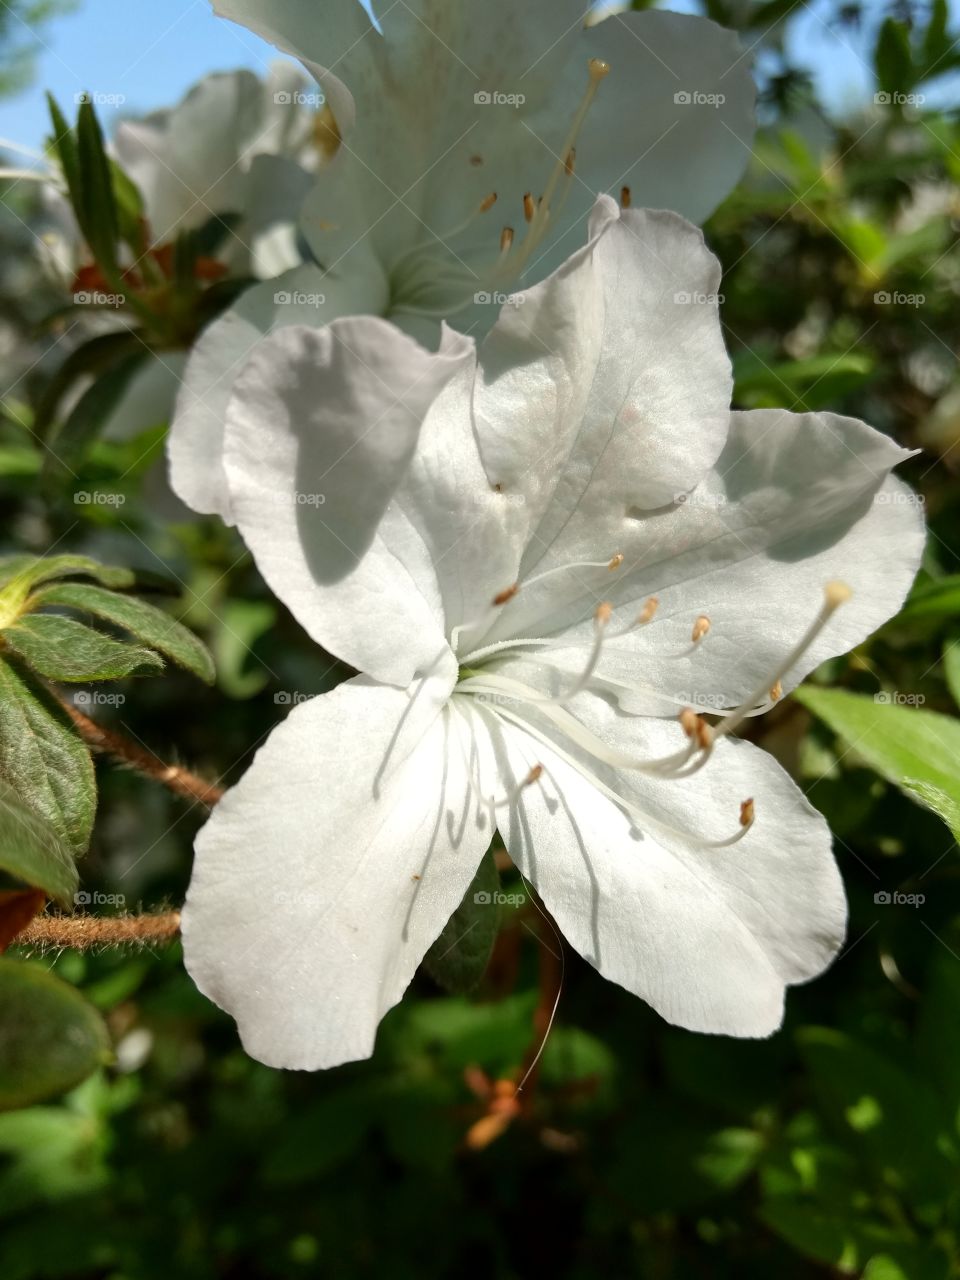 an azalea flower in full bloom